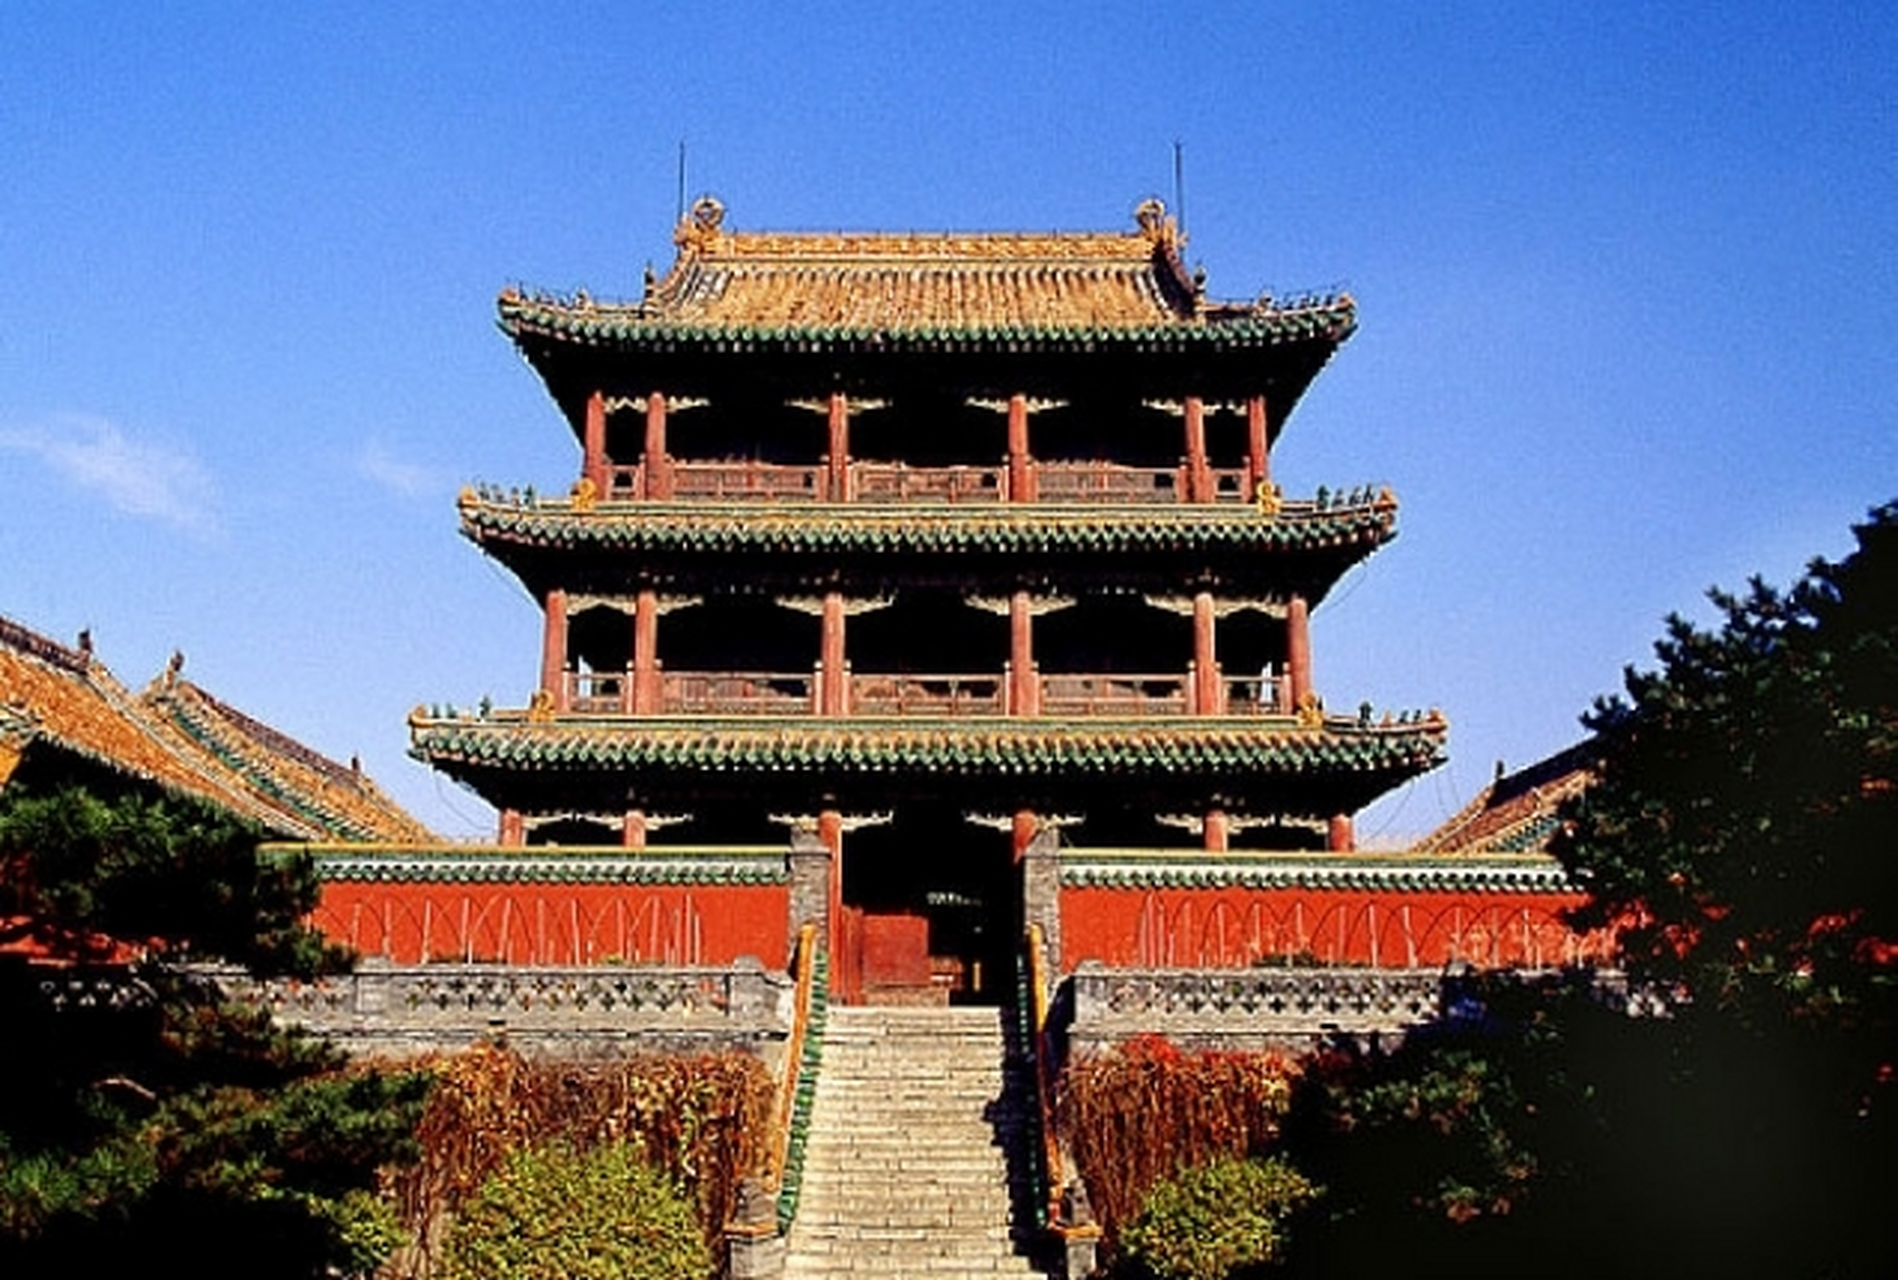 凤凰楼位于辽宁省沈阳市沈河区,是沈阳故宫中路建筑